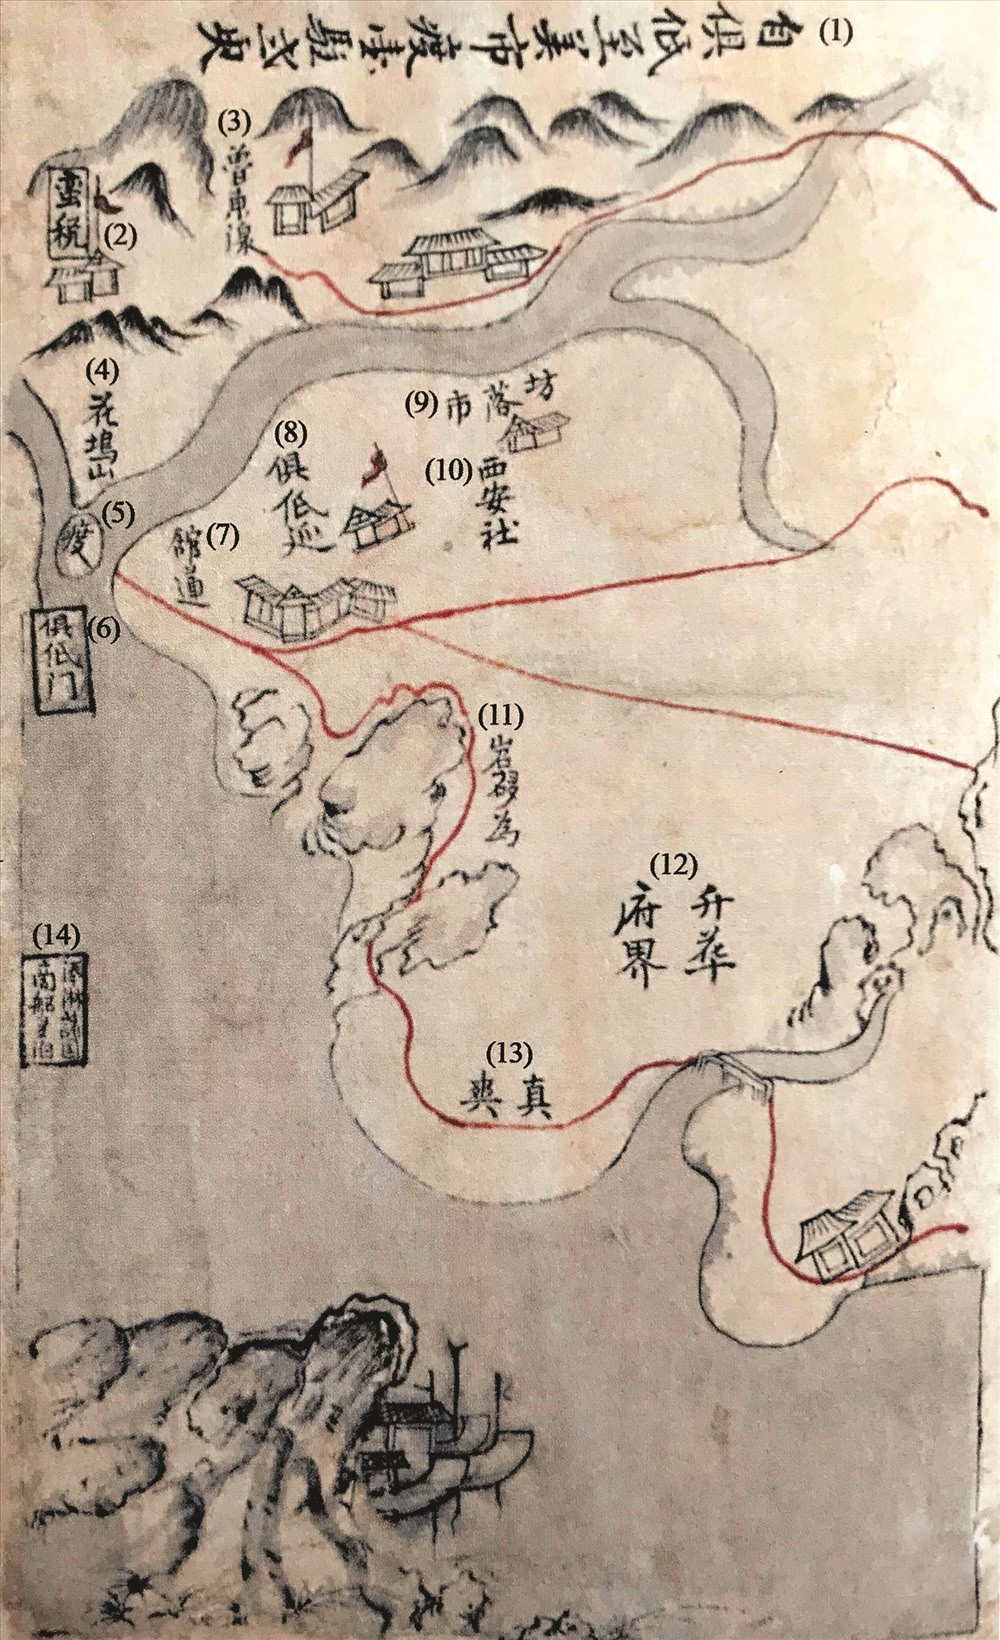 Bản đồ đường đi qua tỉnh Quảng Nam xưa trong sách “Quảng Thuận đạo sử tập”. (ảnh minh họa)